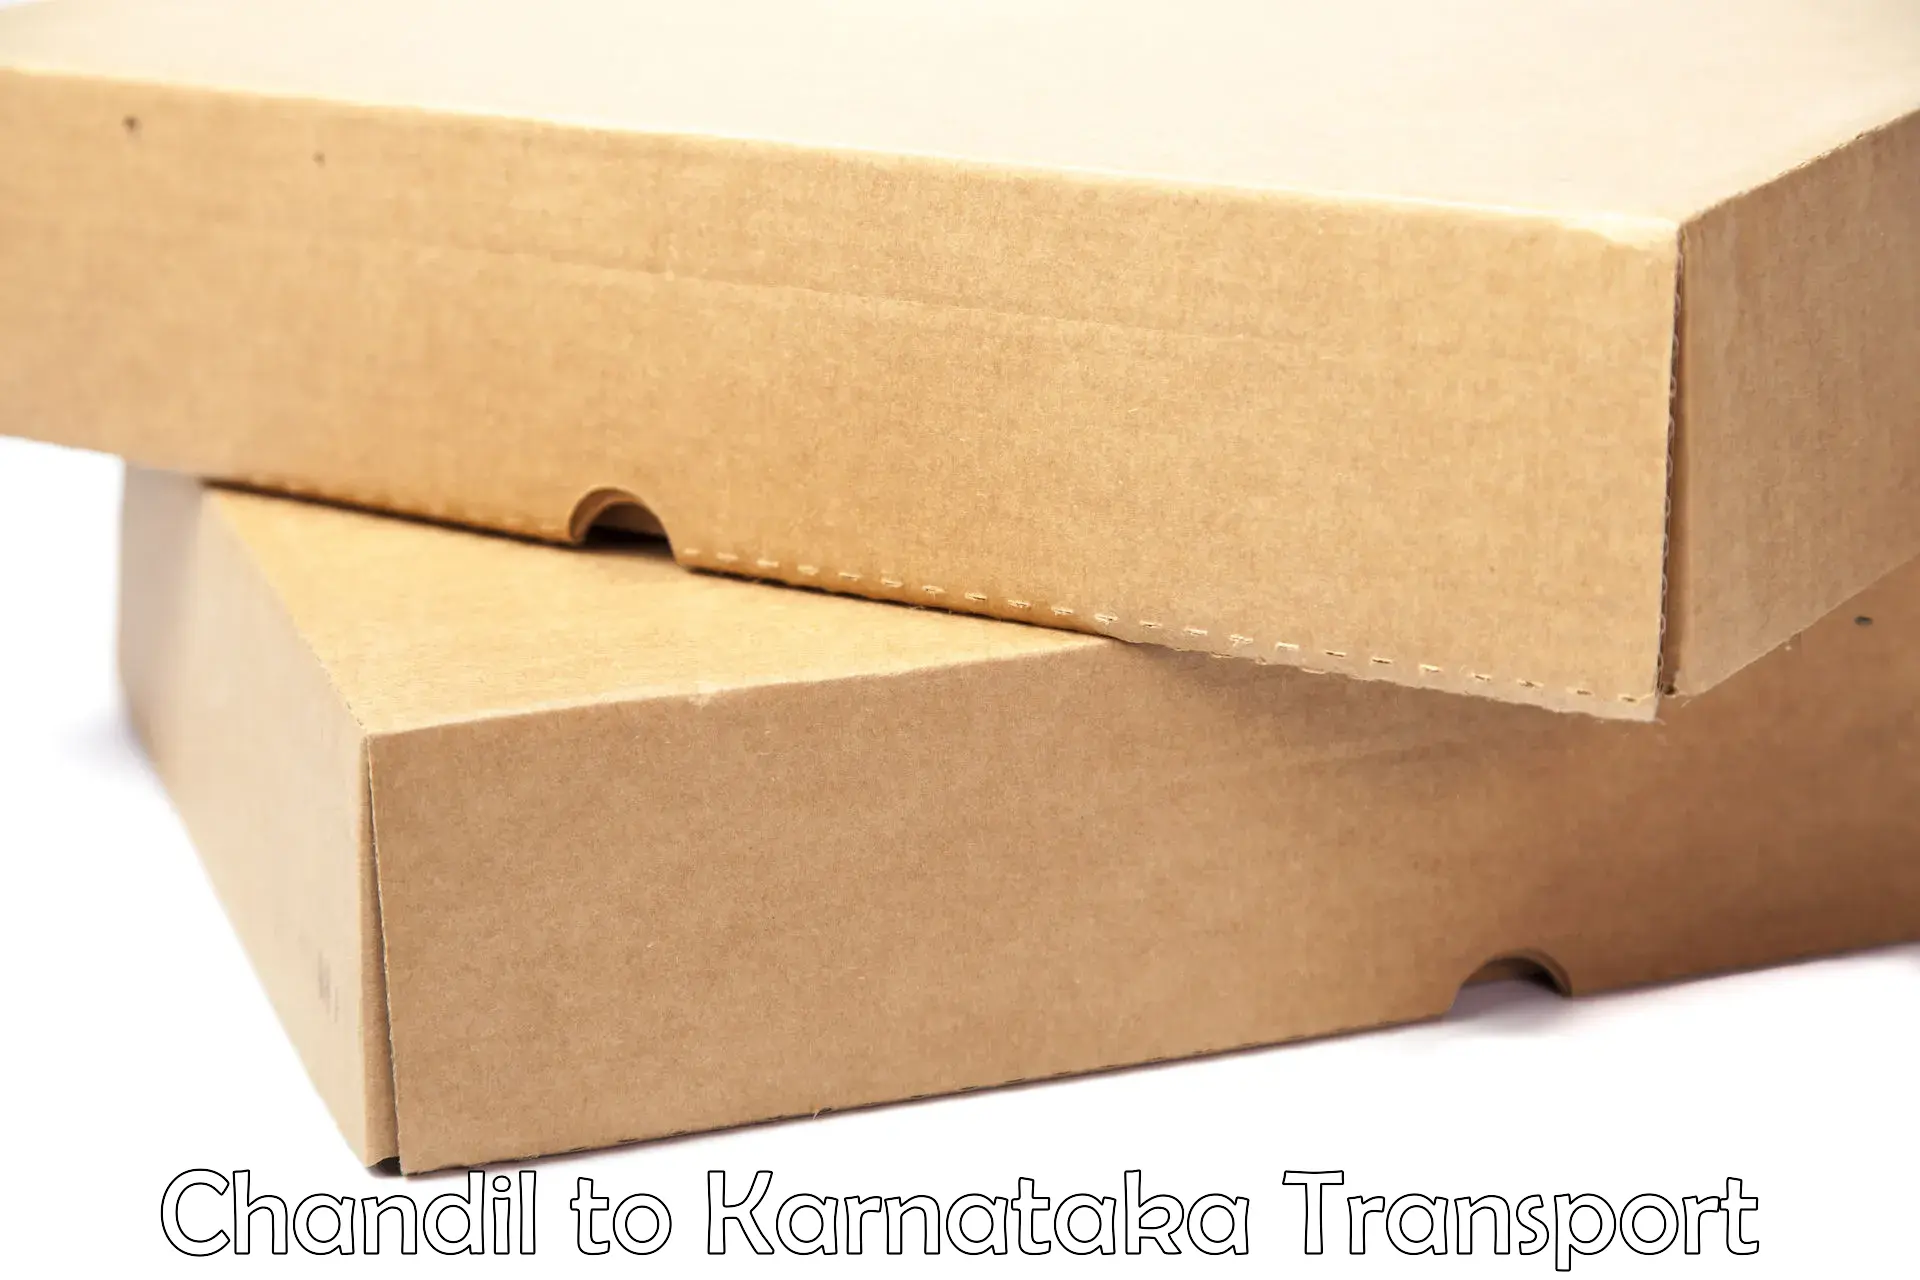 Goods transport services Chandil to Kanjarakatte